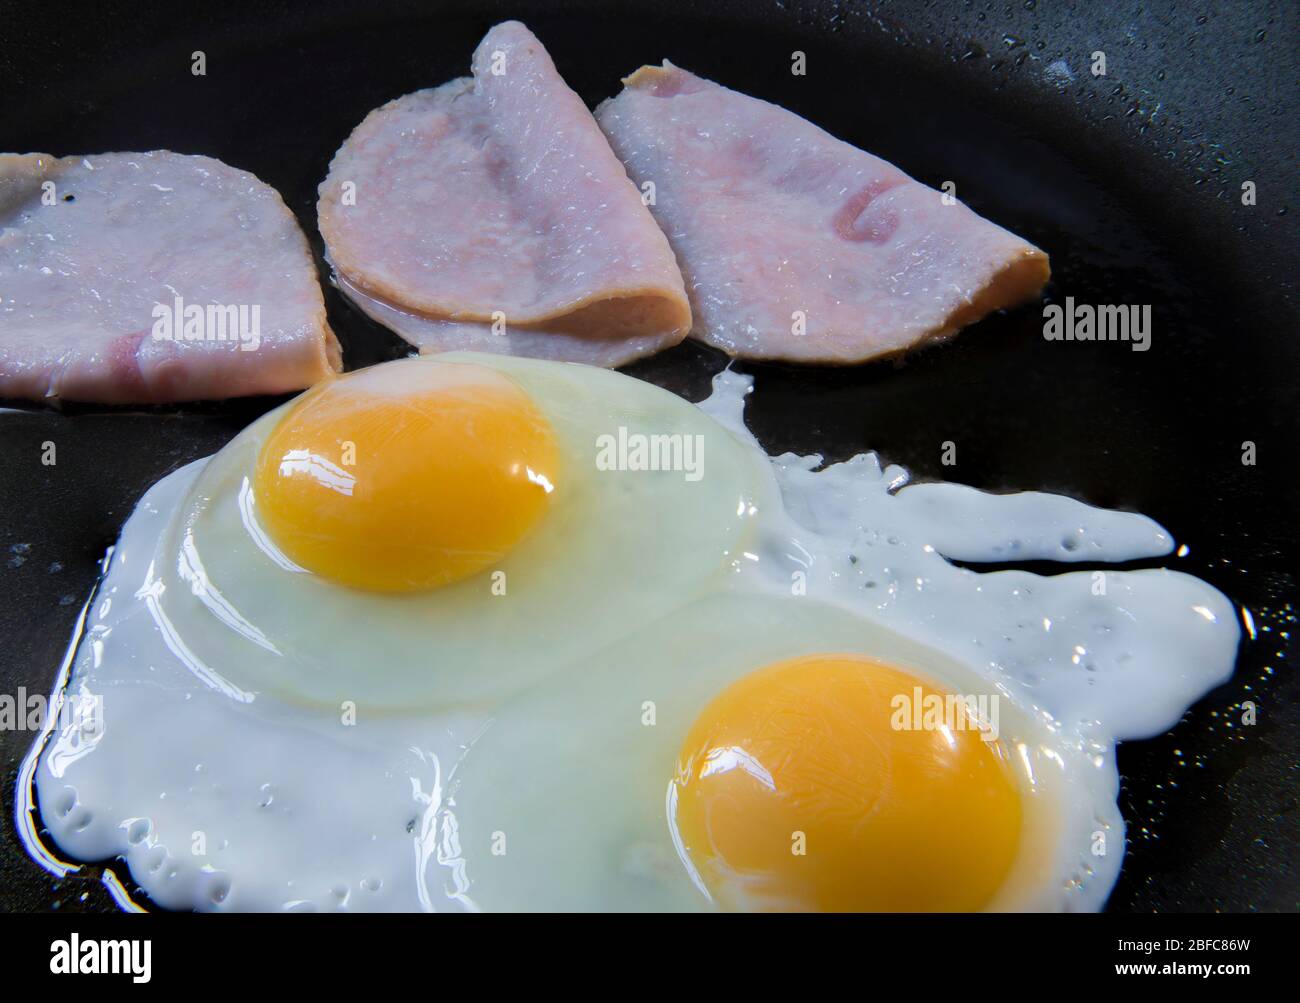 Zubereitung von überleichten Eiern und Schinken, auf einer Pfanne, als Teil des klassischen Frühstücks. Eier auf einem Topf-Konzept kochen. Stockfoto